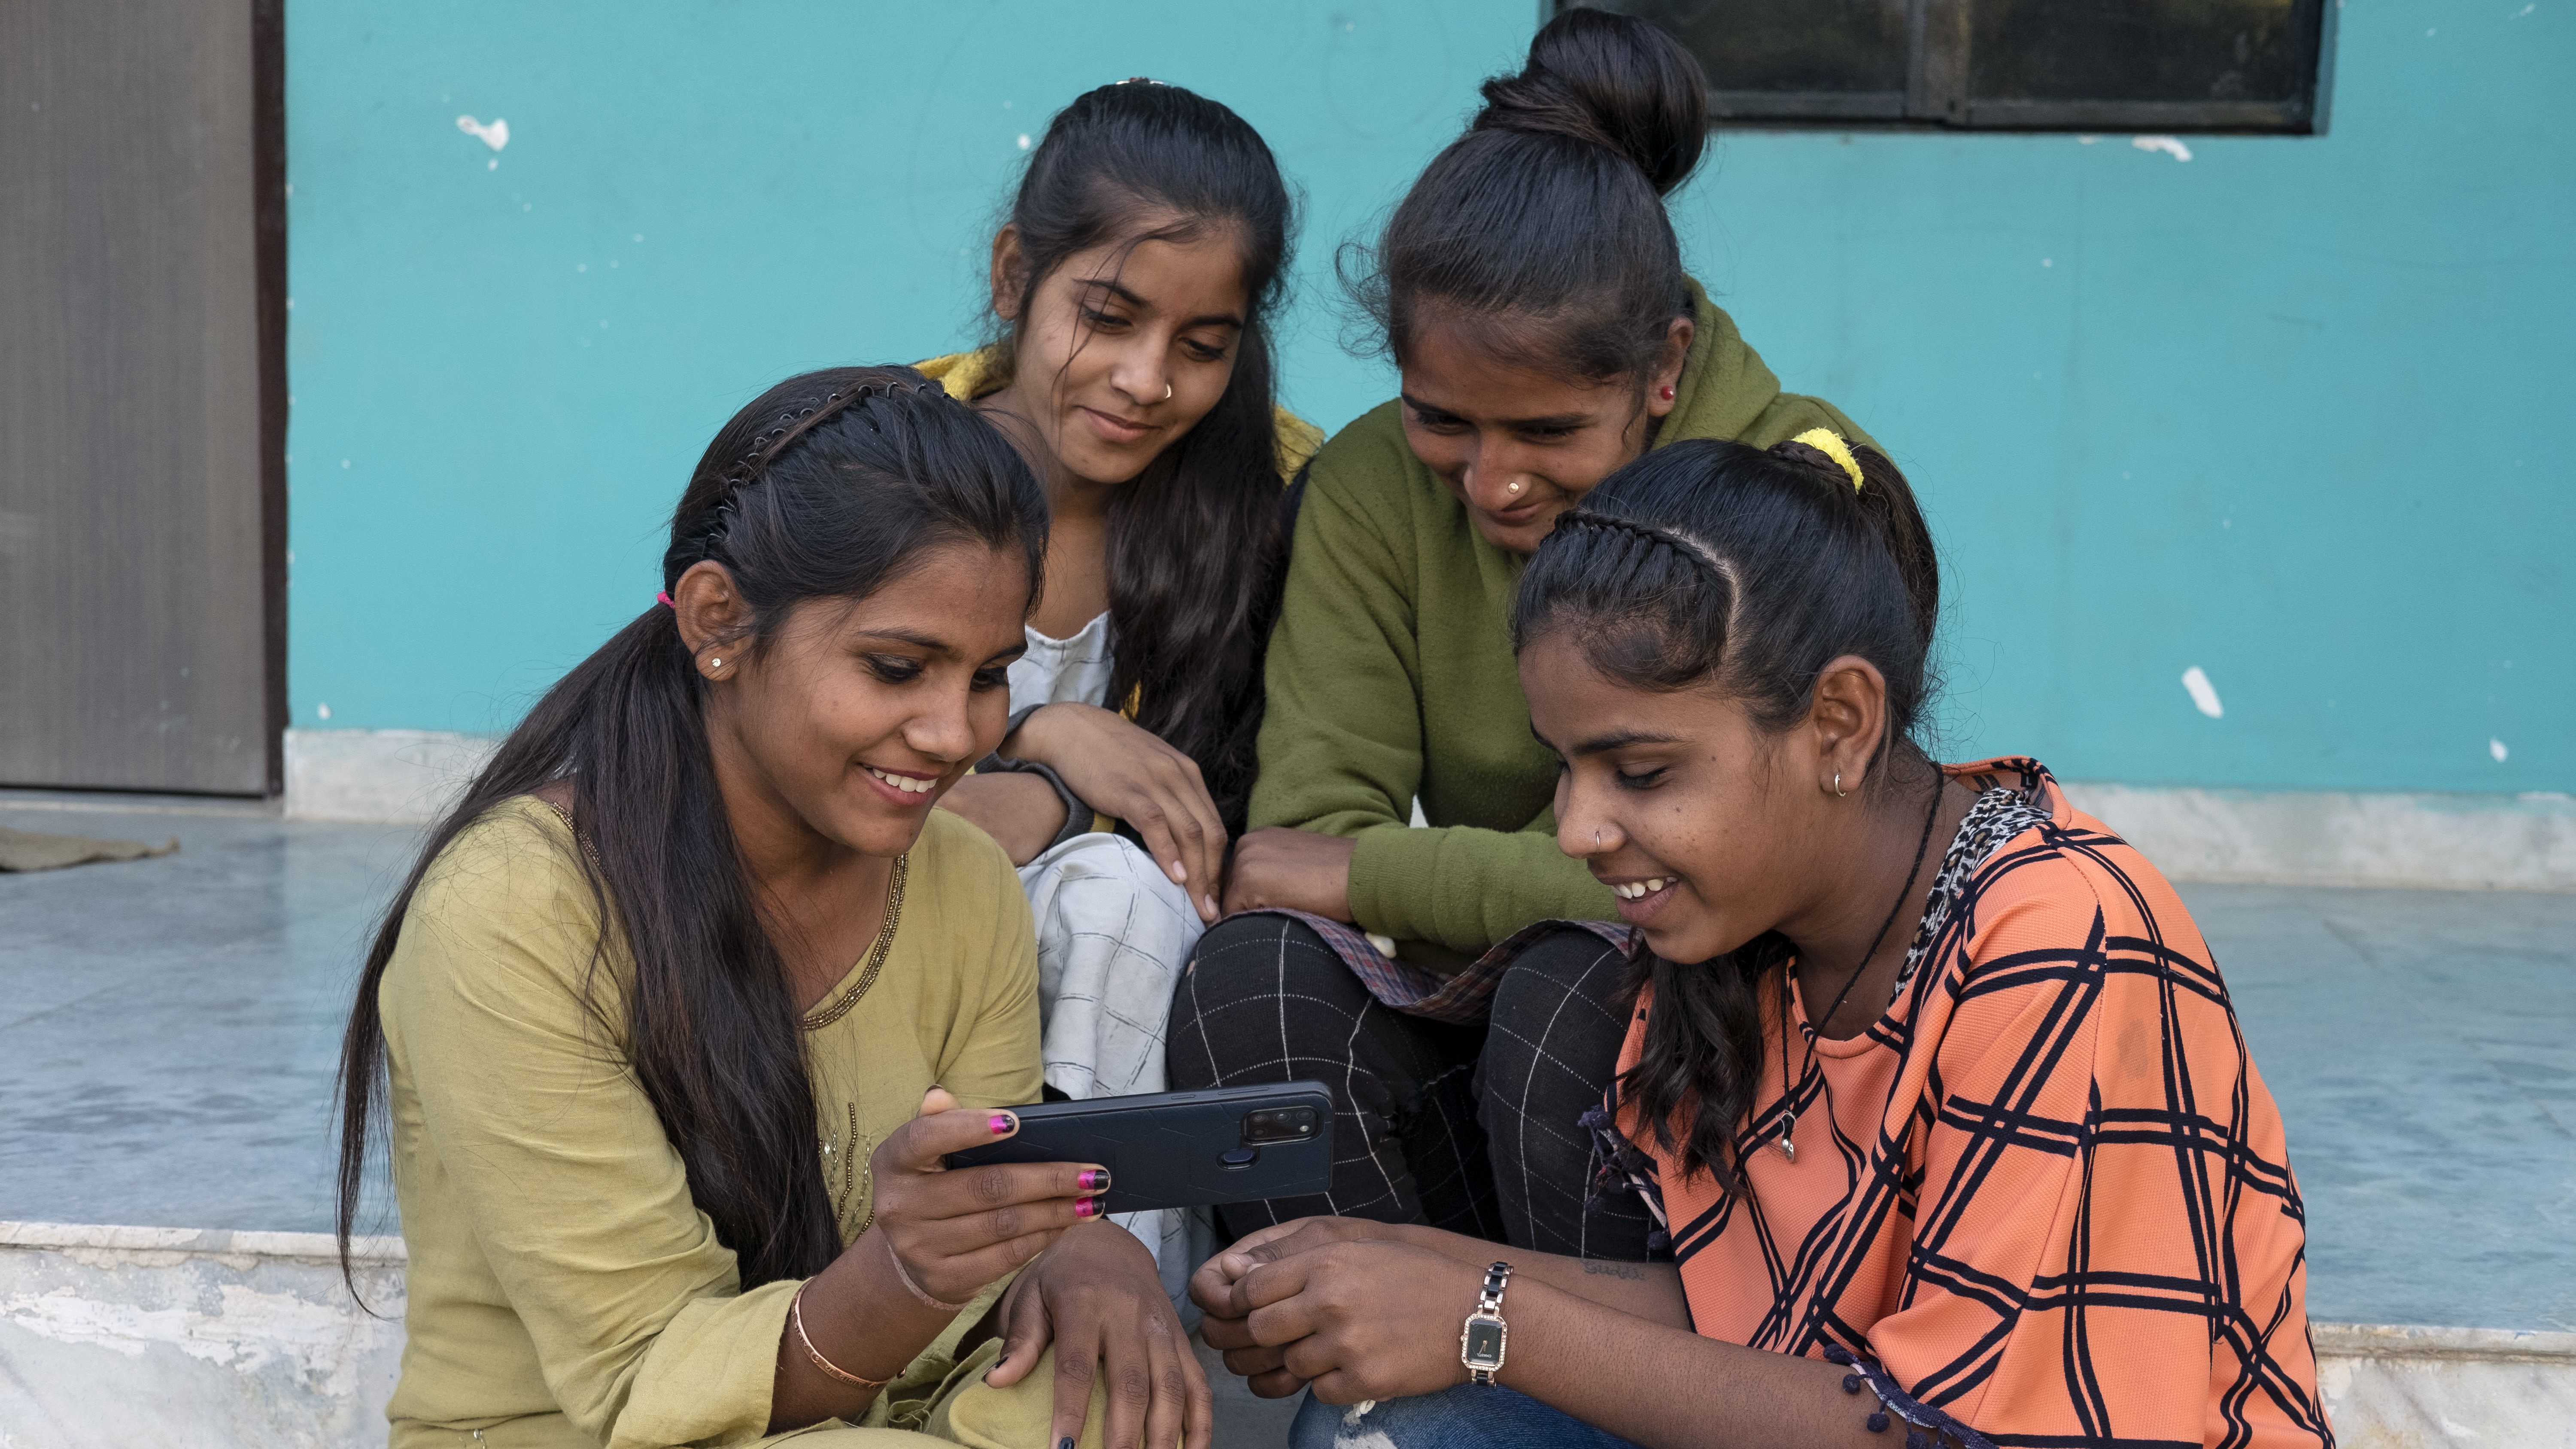 Un groupe d'adolescentes assises sur des marches regarde l'cran d'un tlphone portable.